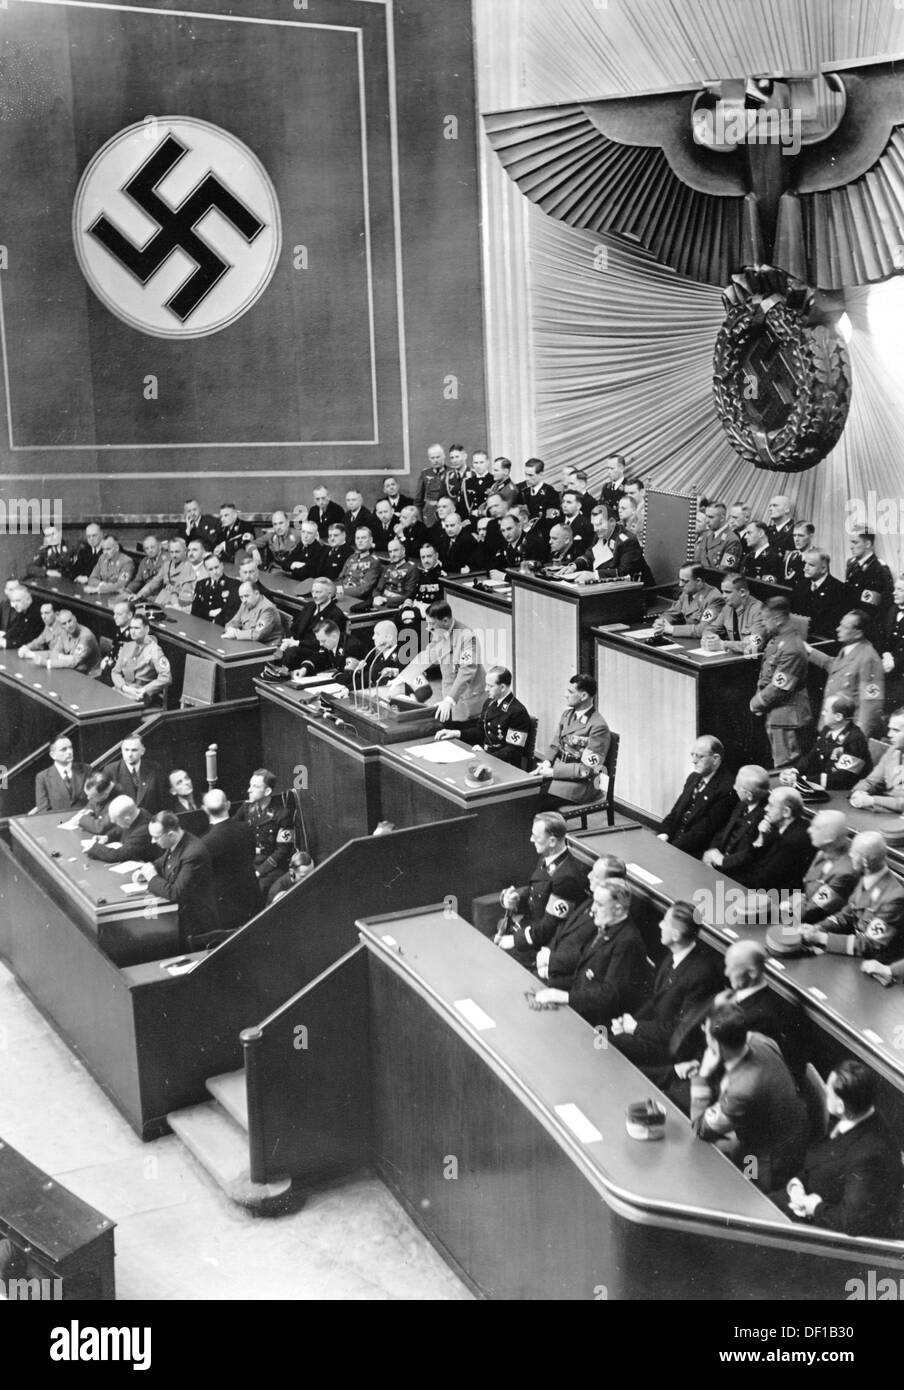 L'image de la propagande nazie! Spectacles le chancelier Adolf Hitler prononcera un discours devant les Reichstags dans l'Opéra de Kroll à Berlin, Allemagne, le 18 mars 1938. Le discours traite, entre autres, de l'annexion de l'Autriche par le Reich allemand. A droite, le gouvernement autrichien dirigé par Arthur Seyß-Inquart est représenté, à gauche, le gouvernement allemand Reich. Fotoarchiv für Zeitgeschichte Banque D'Images